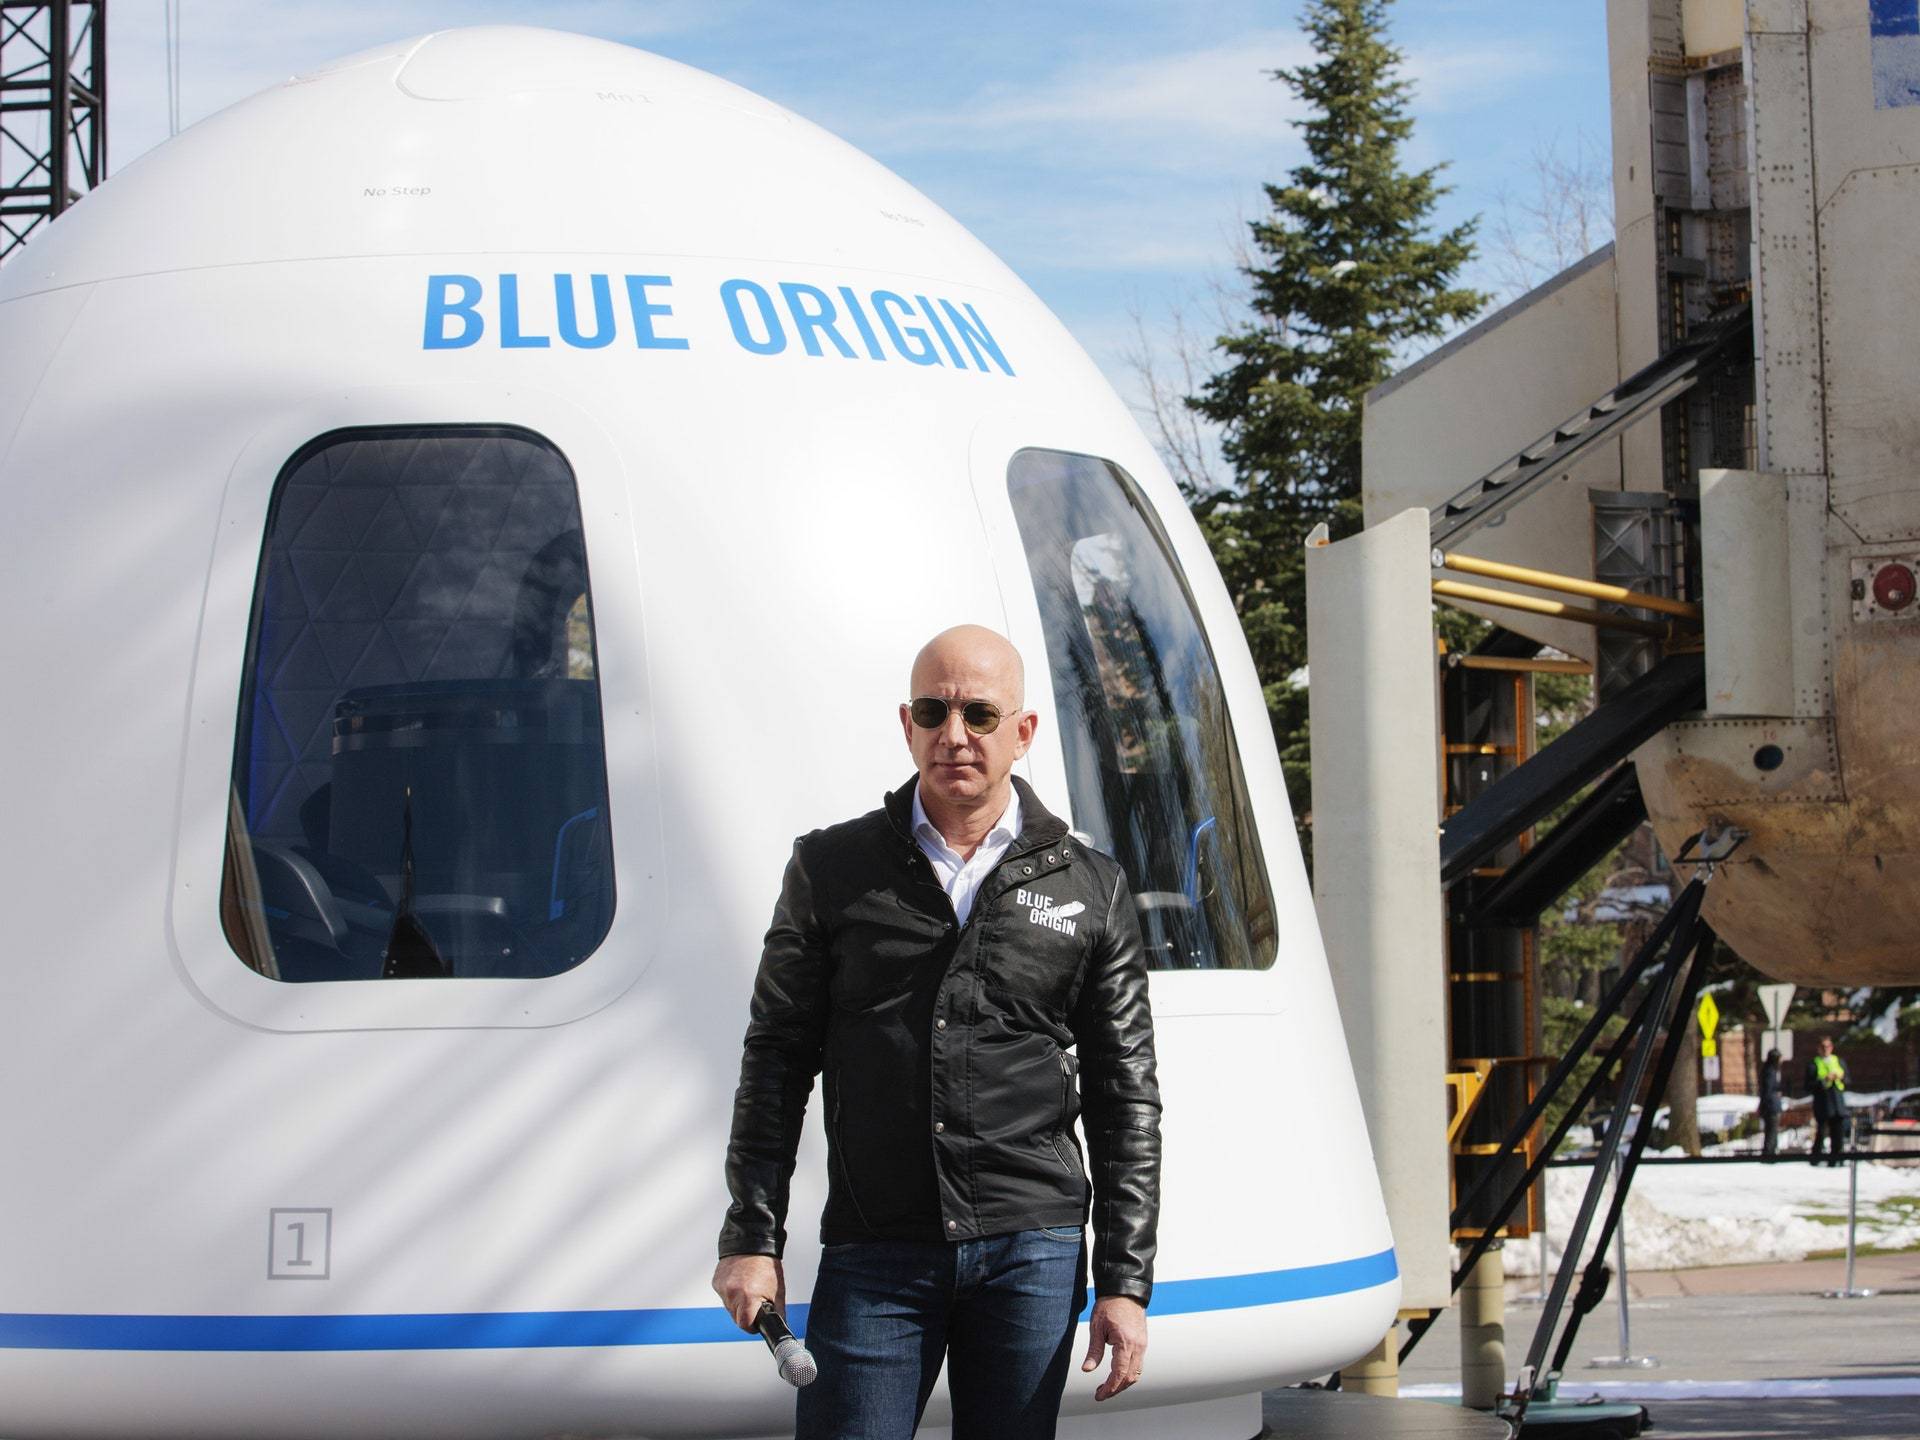 A plătit 28 de milioane de dolari să zboare în spațiu alături de Bezos, dar a renunțat brusc. Motivul, uimitor